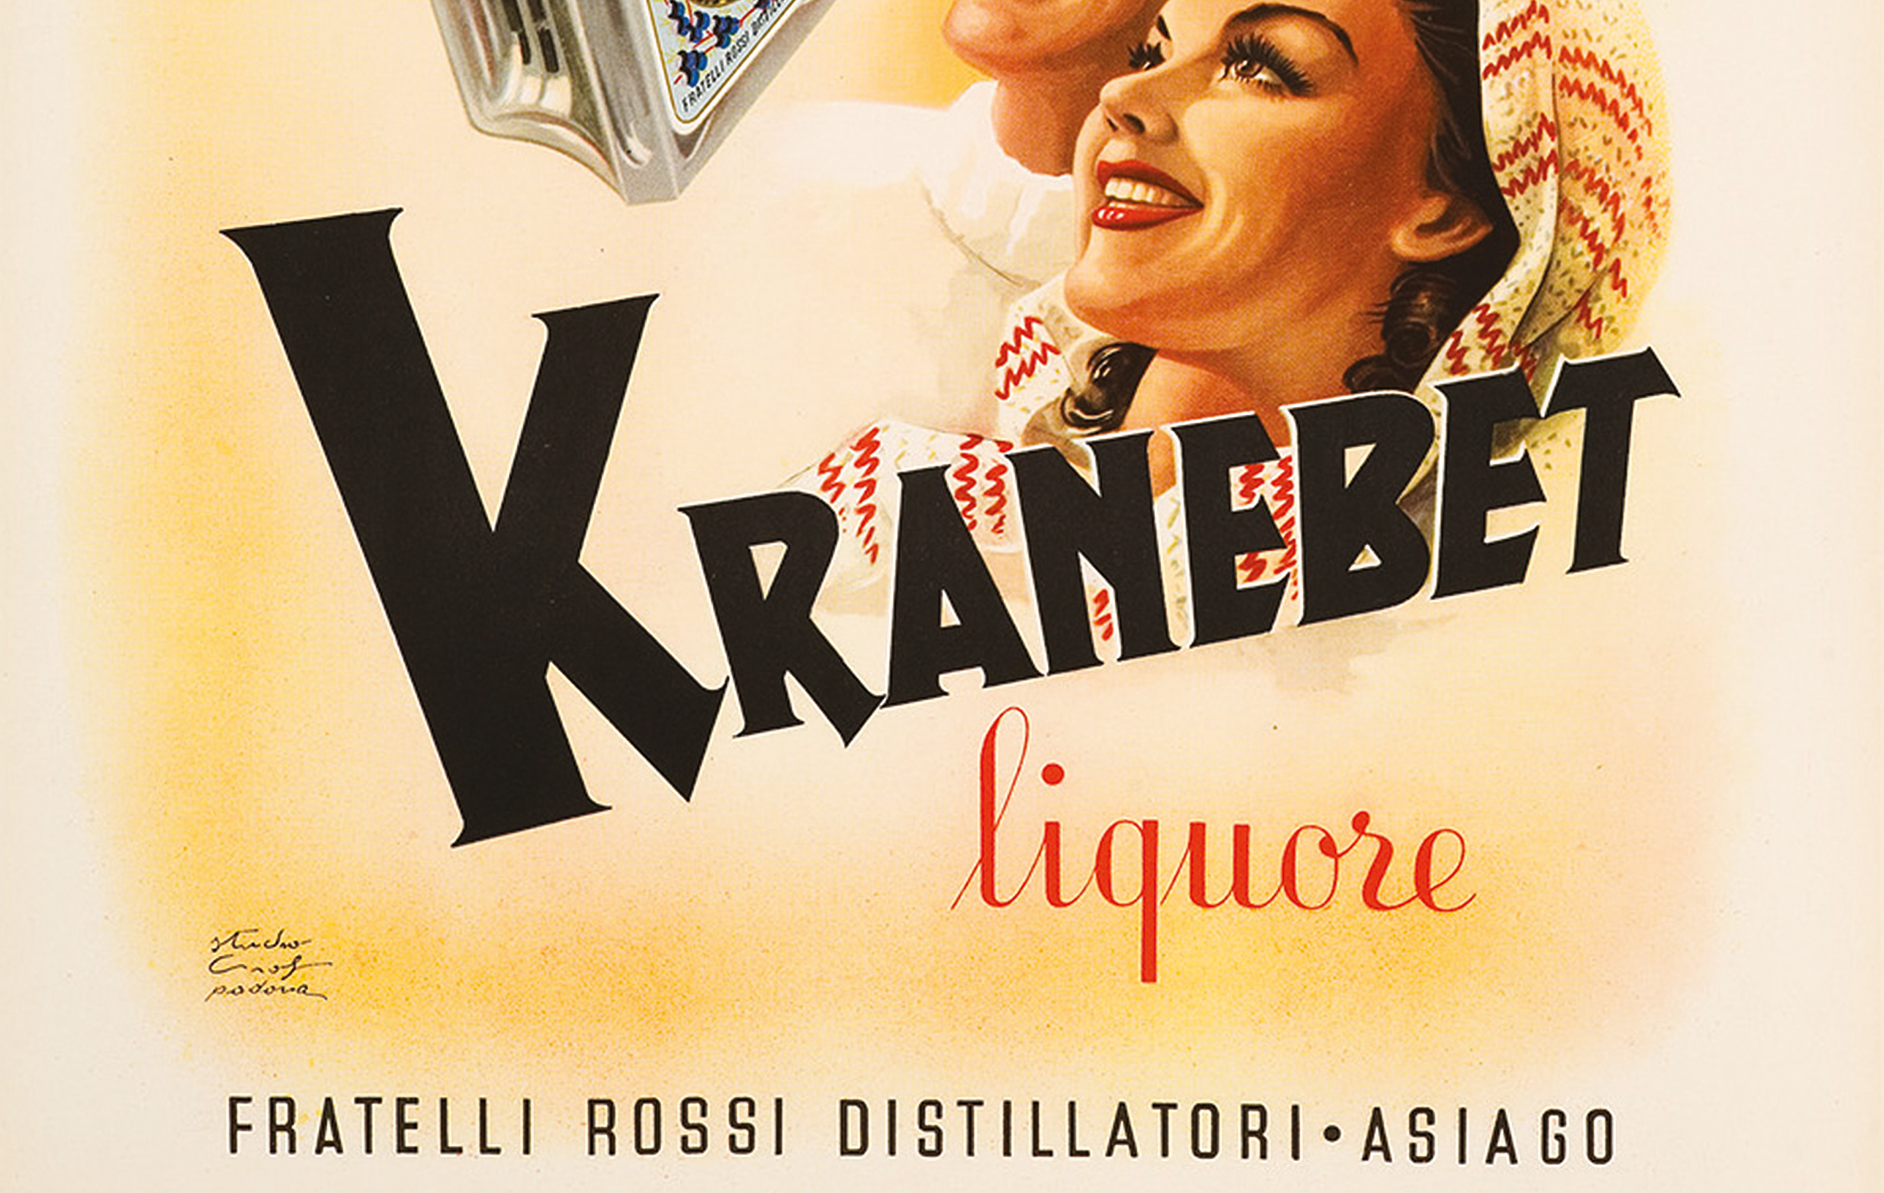 Kranebet: l'amaro bianco distillato di ginepro e radici alpine